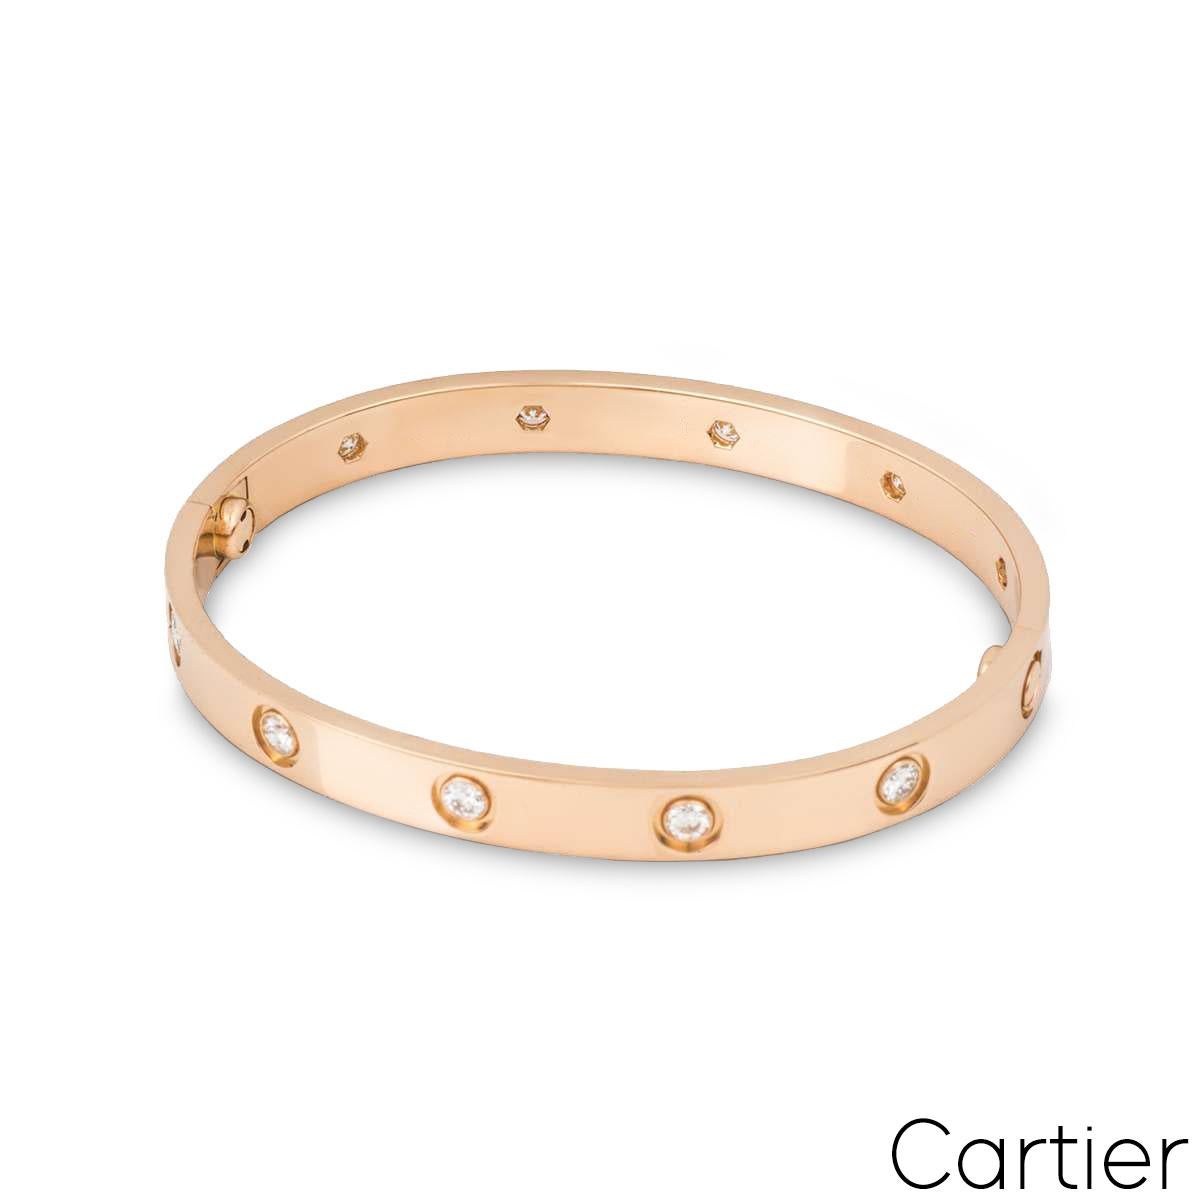 Un bracelet Love en or rose 18 carats et diamants de Cartier. Le bracelet est serti de 10 diamants ronds de taille brillant circulant sur le bord extérieur pour un total de 0,96ct. Le bracelet, de taille 17, est doté du nouveau style de fixation à